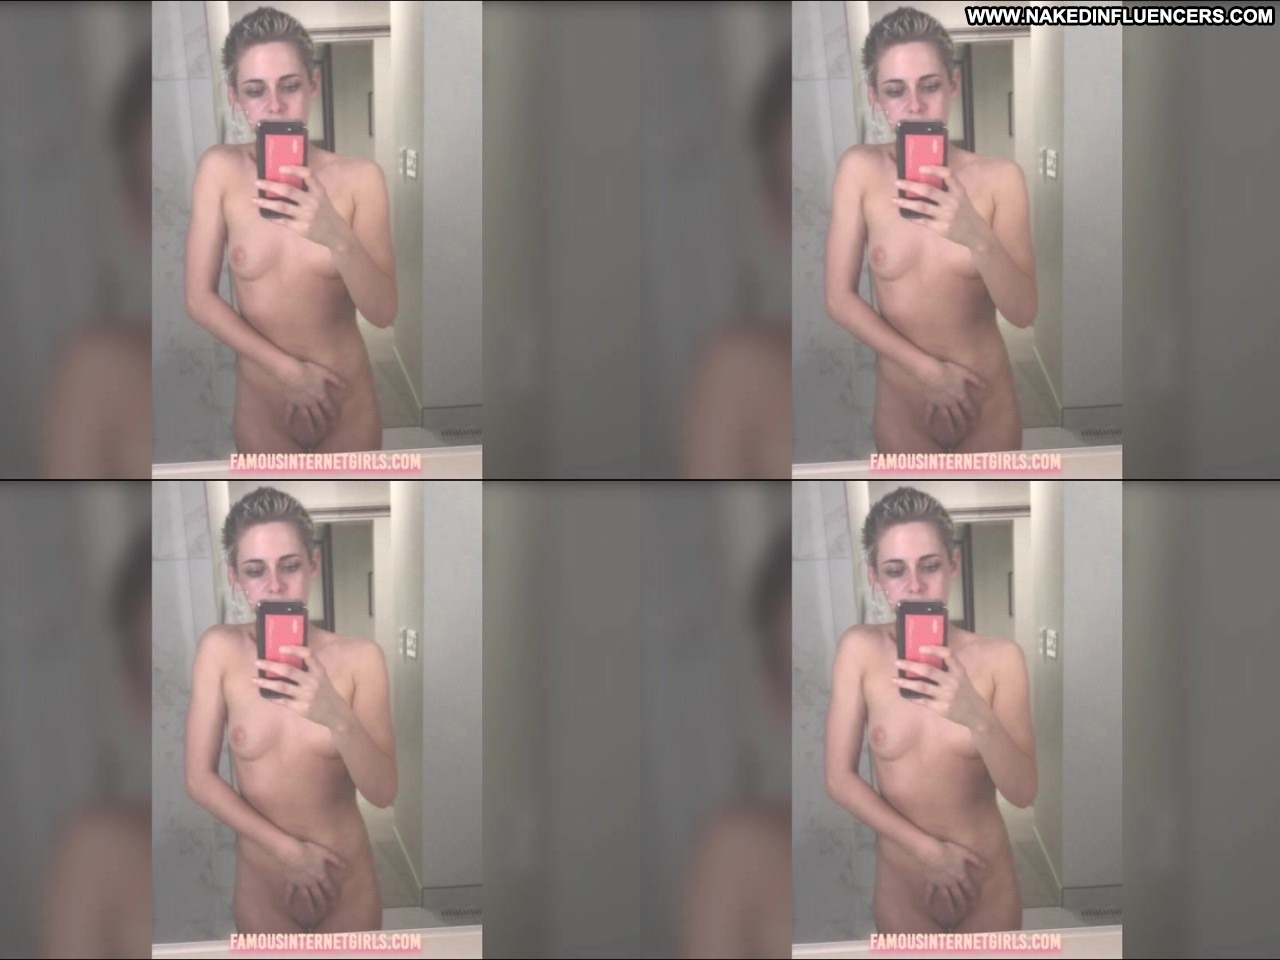 Kristen Stewart Video Leak Influencer Nude Selfies Nude Selfies Straight